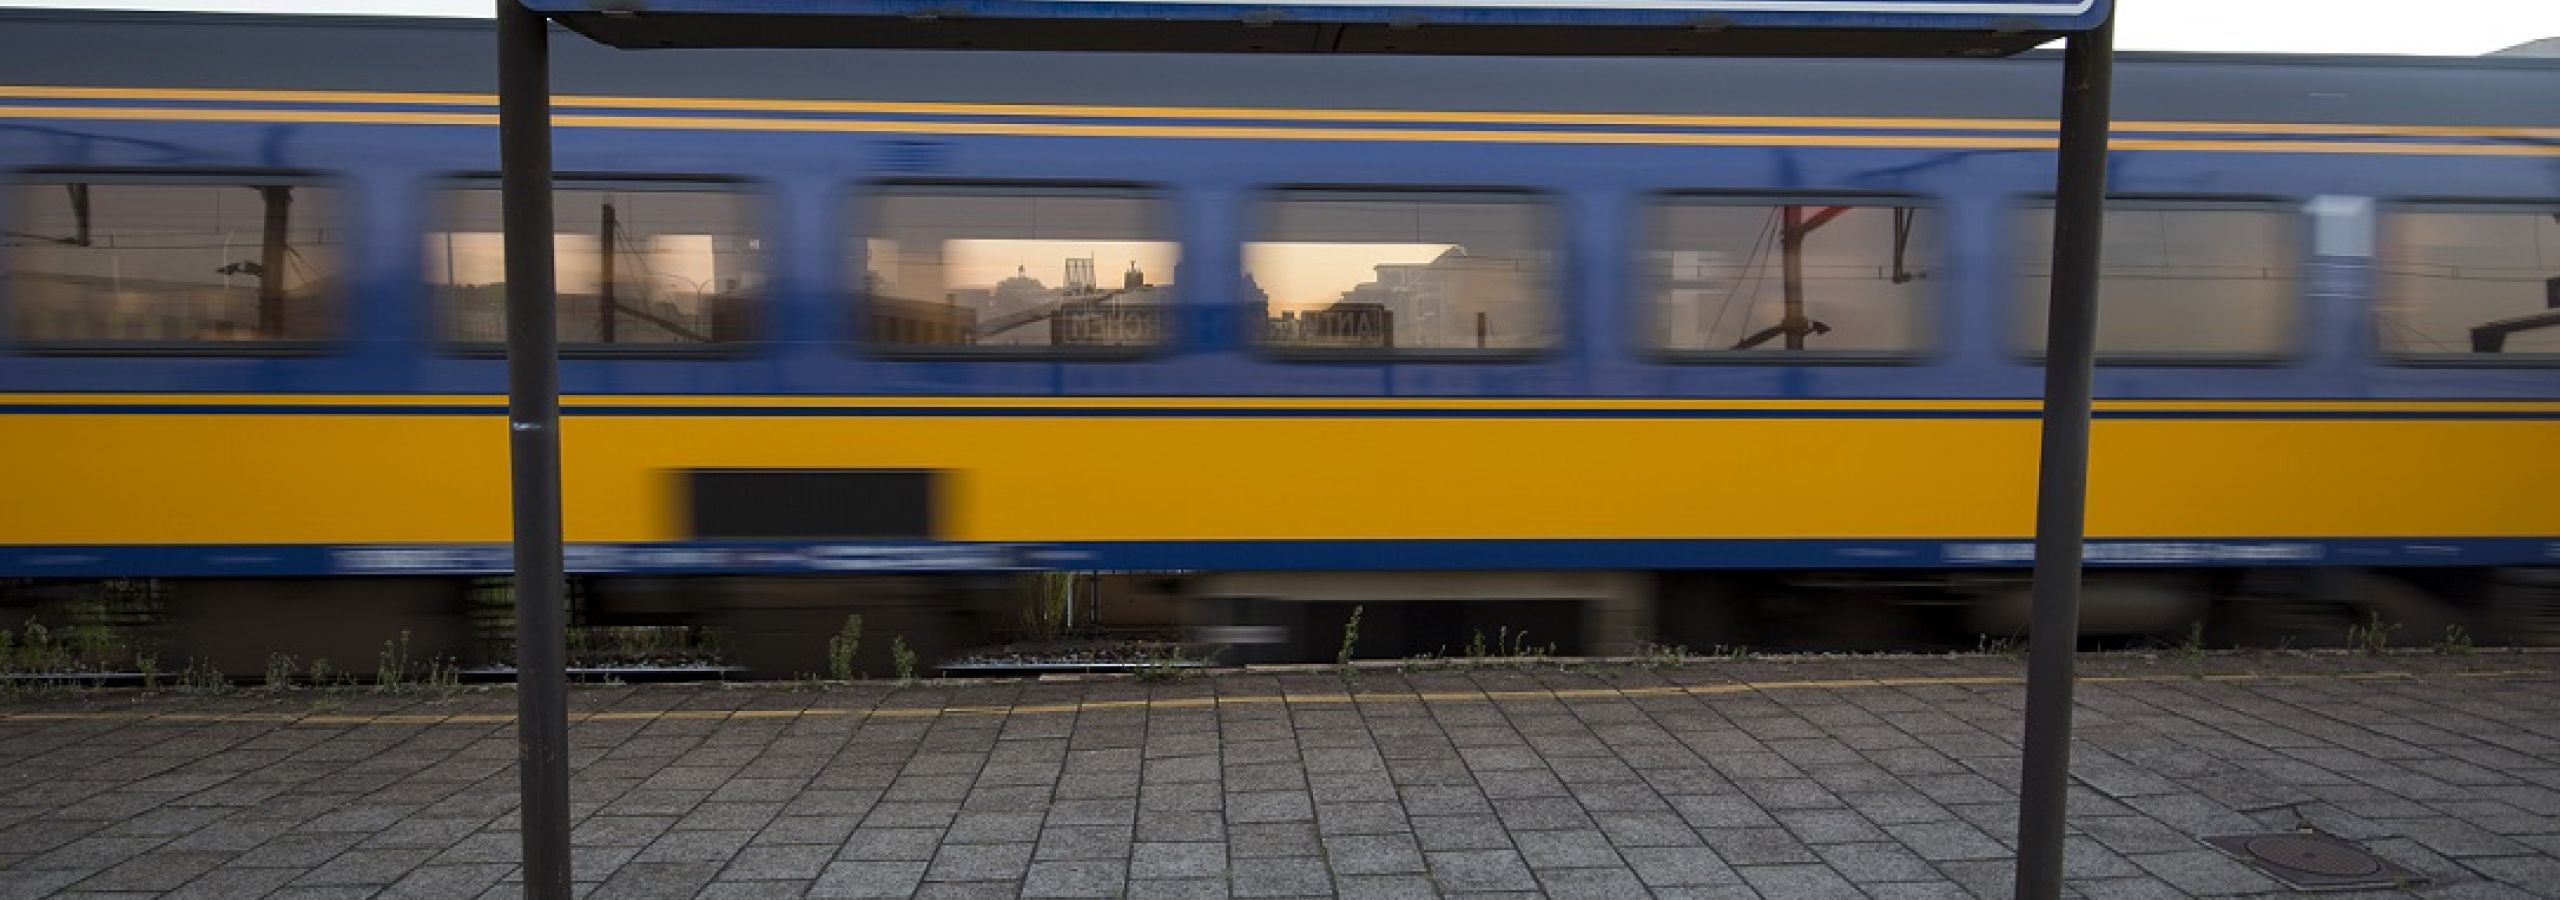 NS-trein in Antwerpen